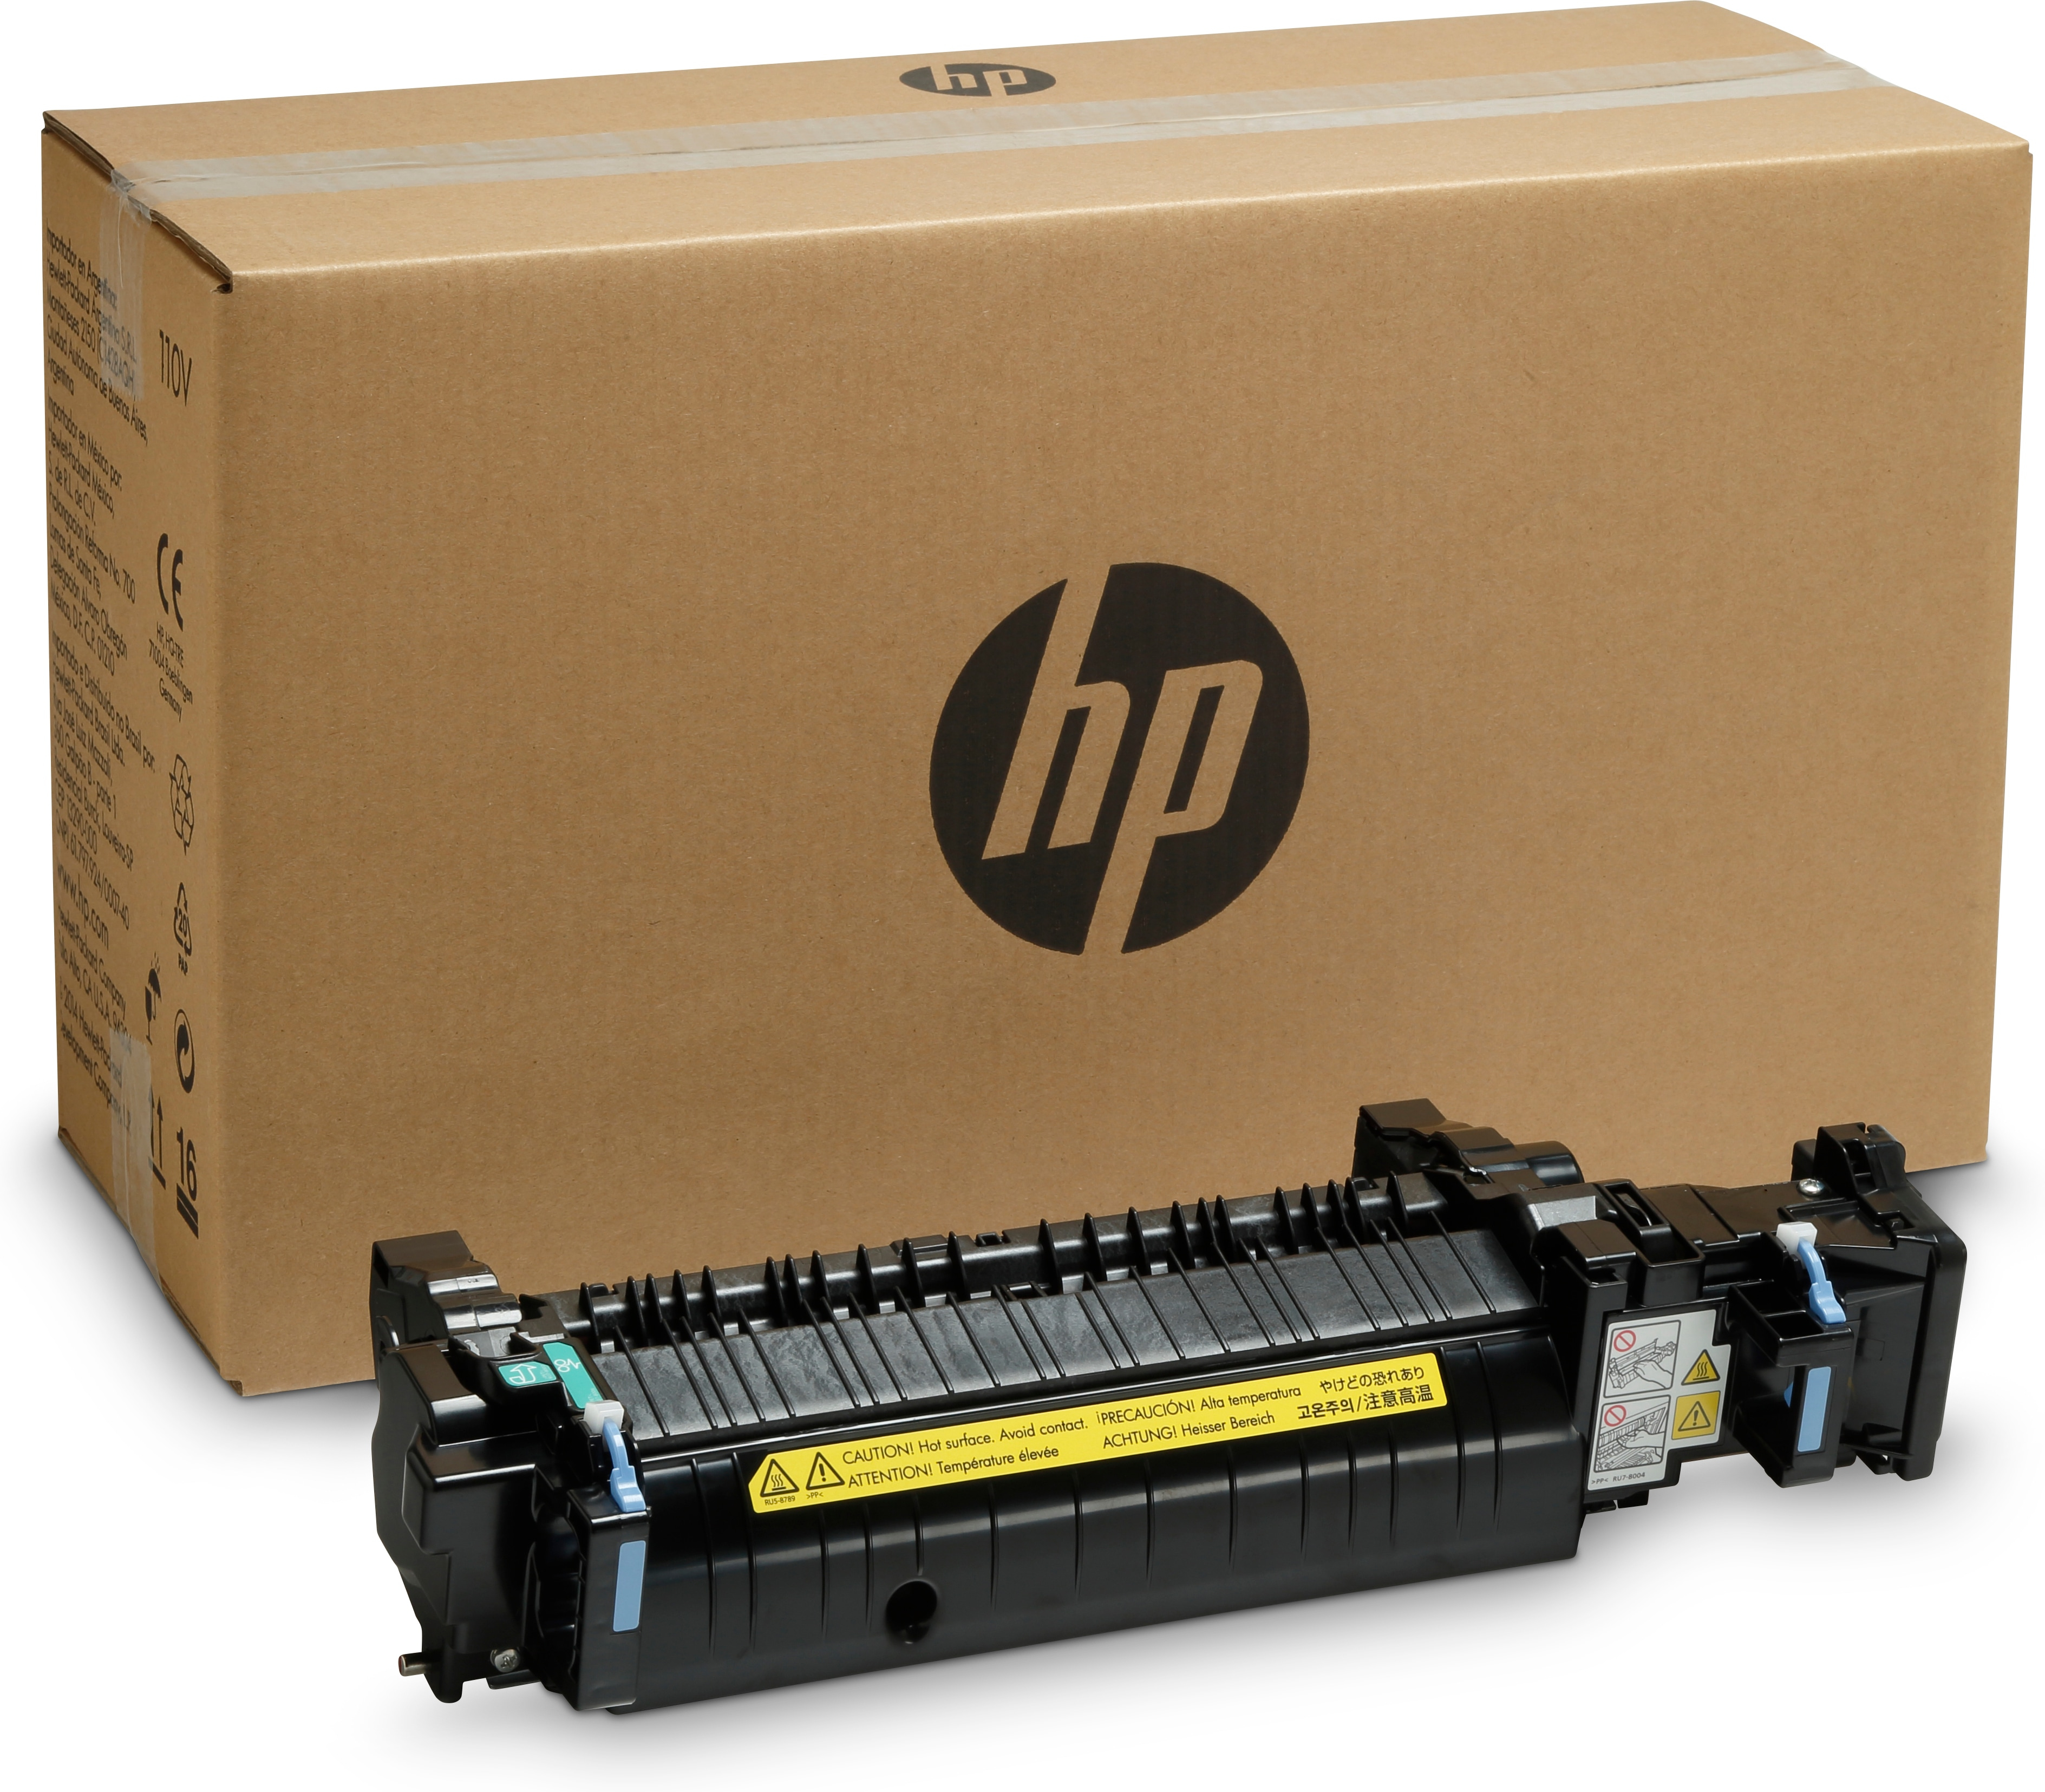 HP 220 V - Kit für Fixiereinheit